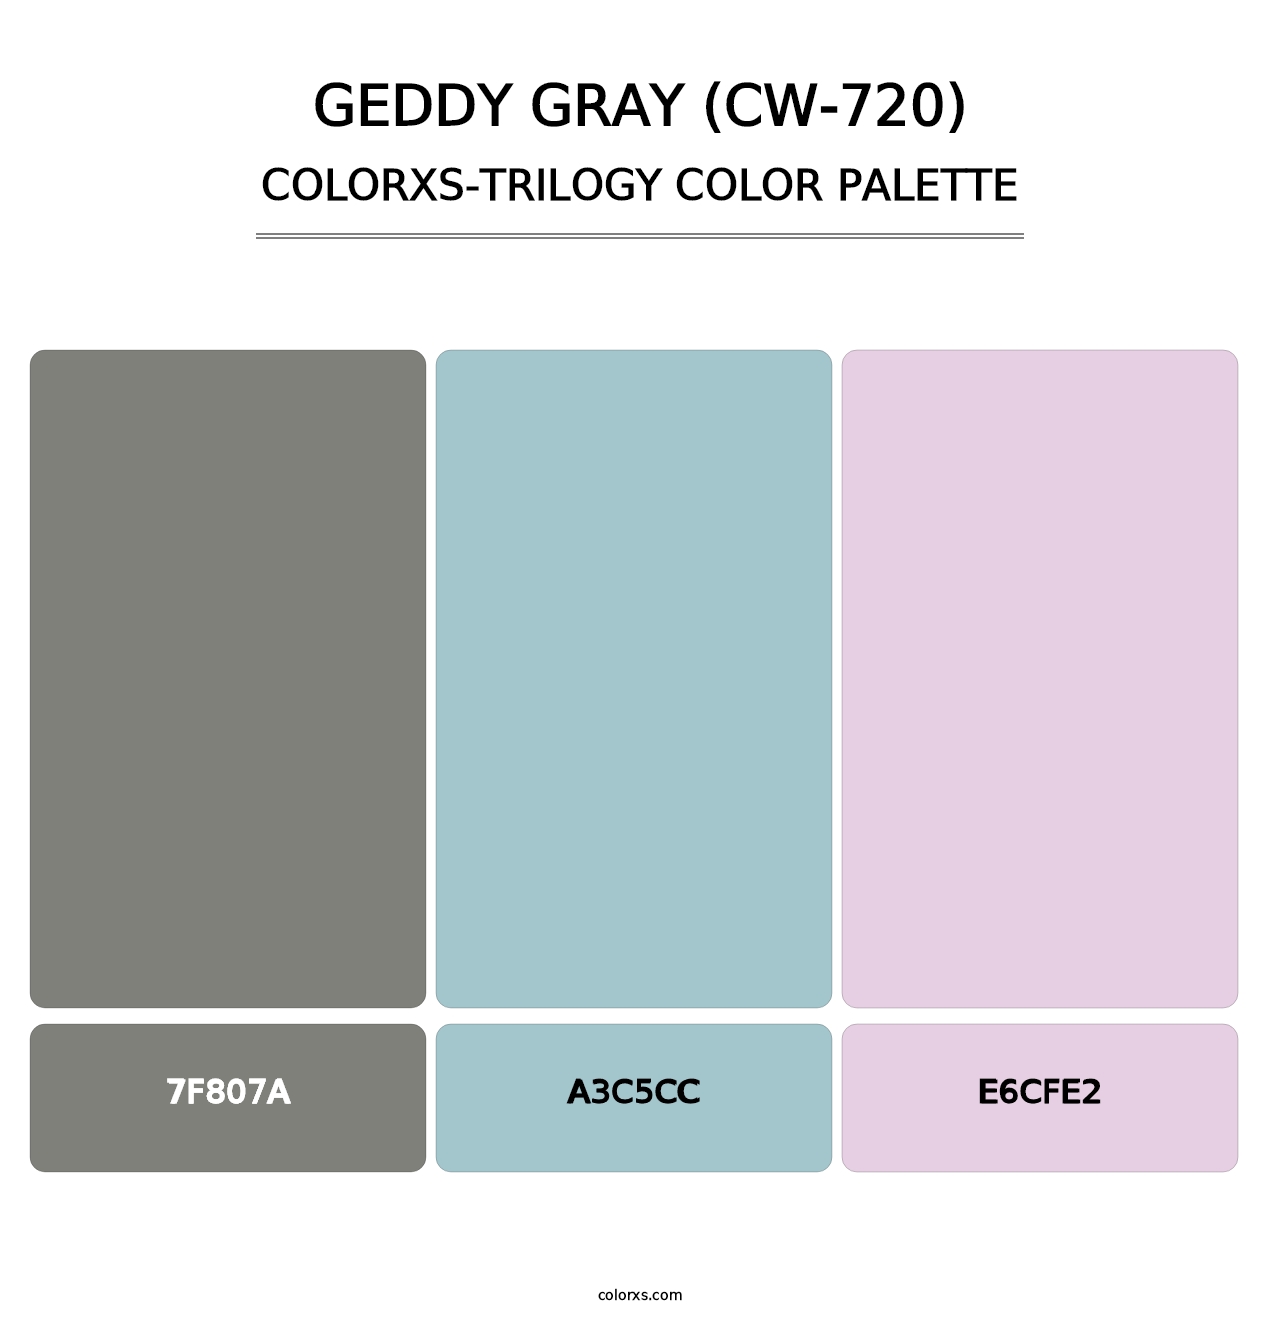 Geddy Gray (CW-720) - Colorxs Trilogy Palette